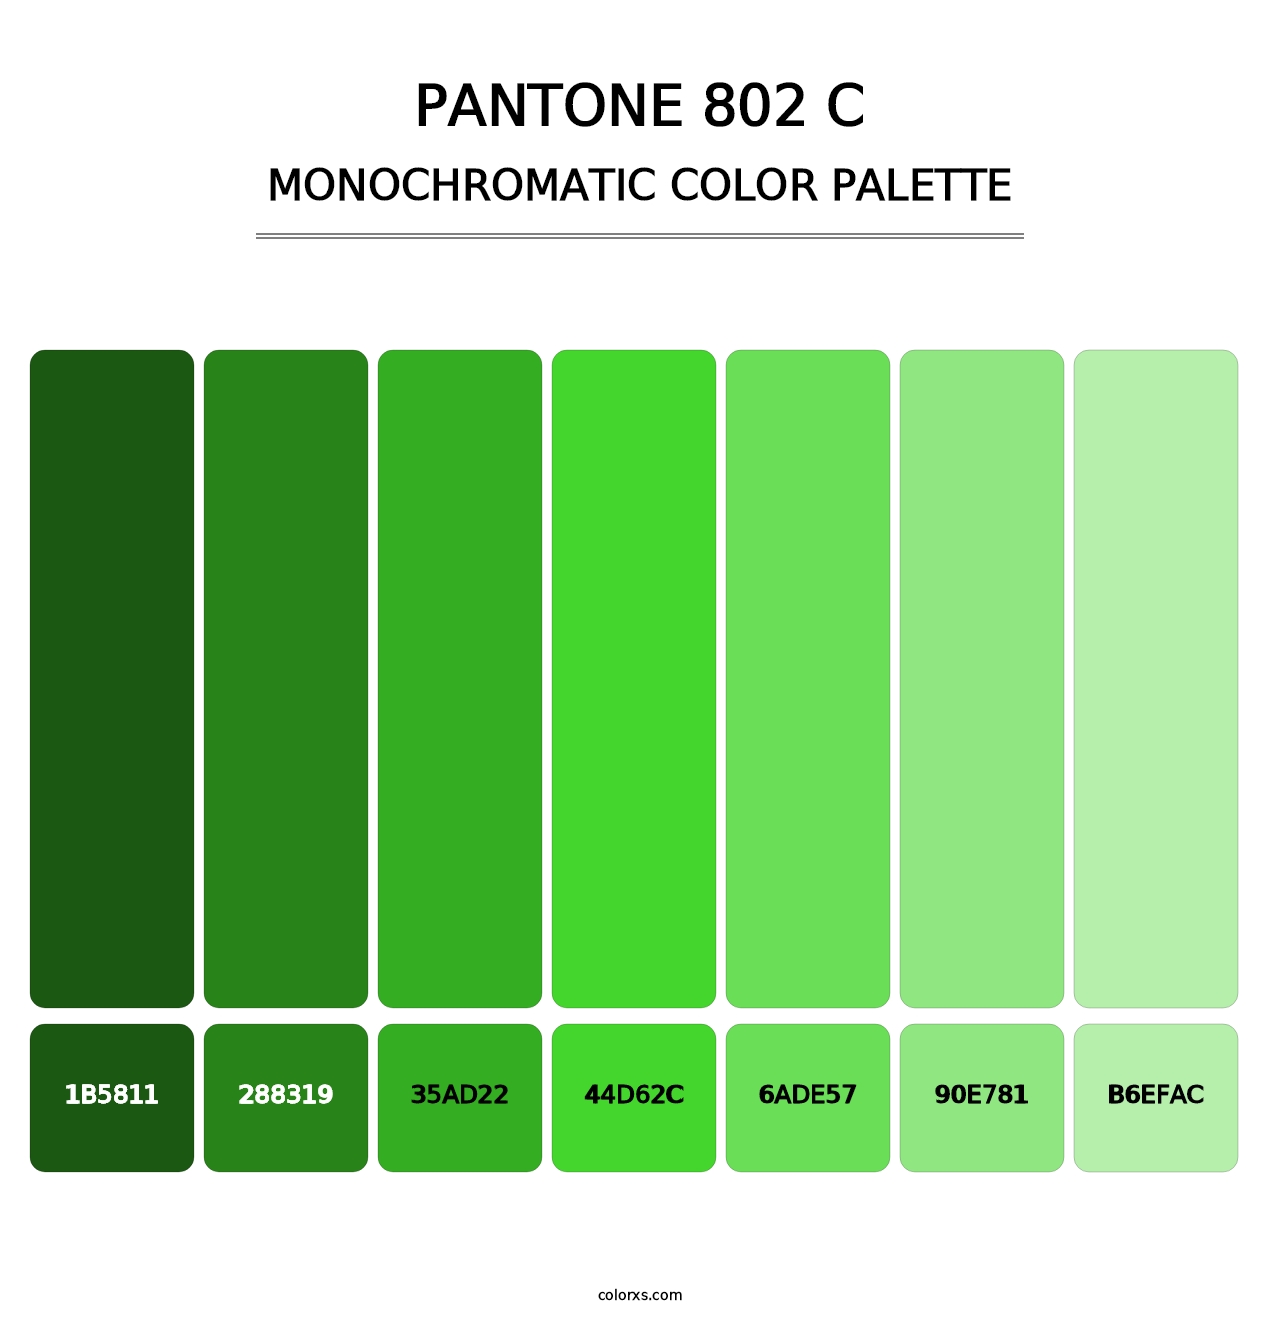 PANTONE 802 C - Monochromatic Color Palette